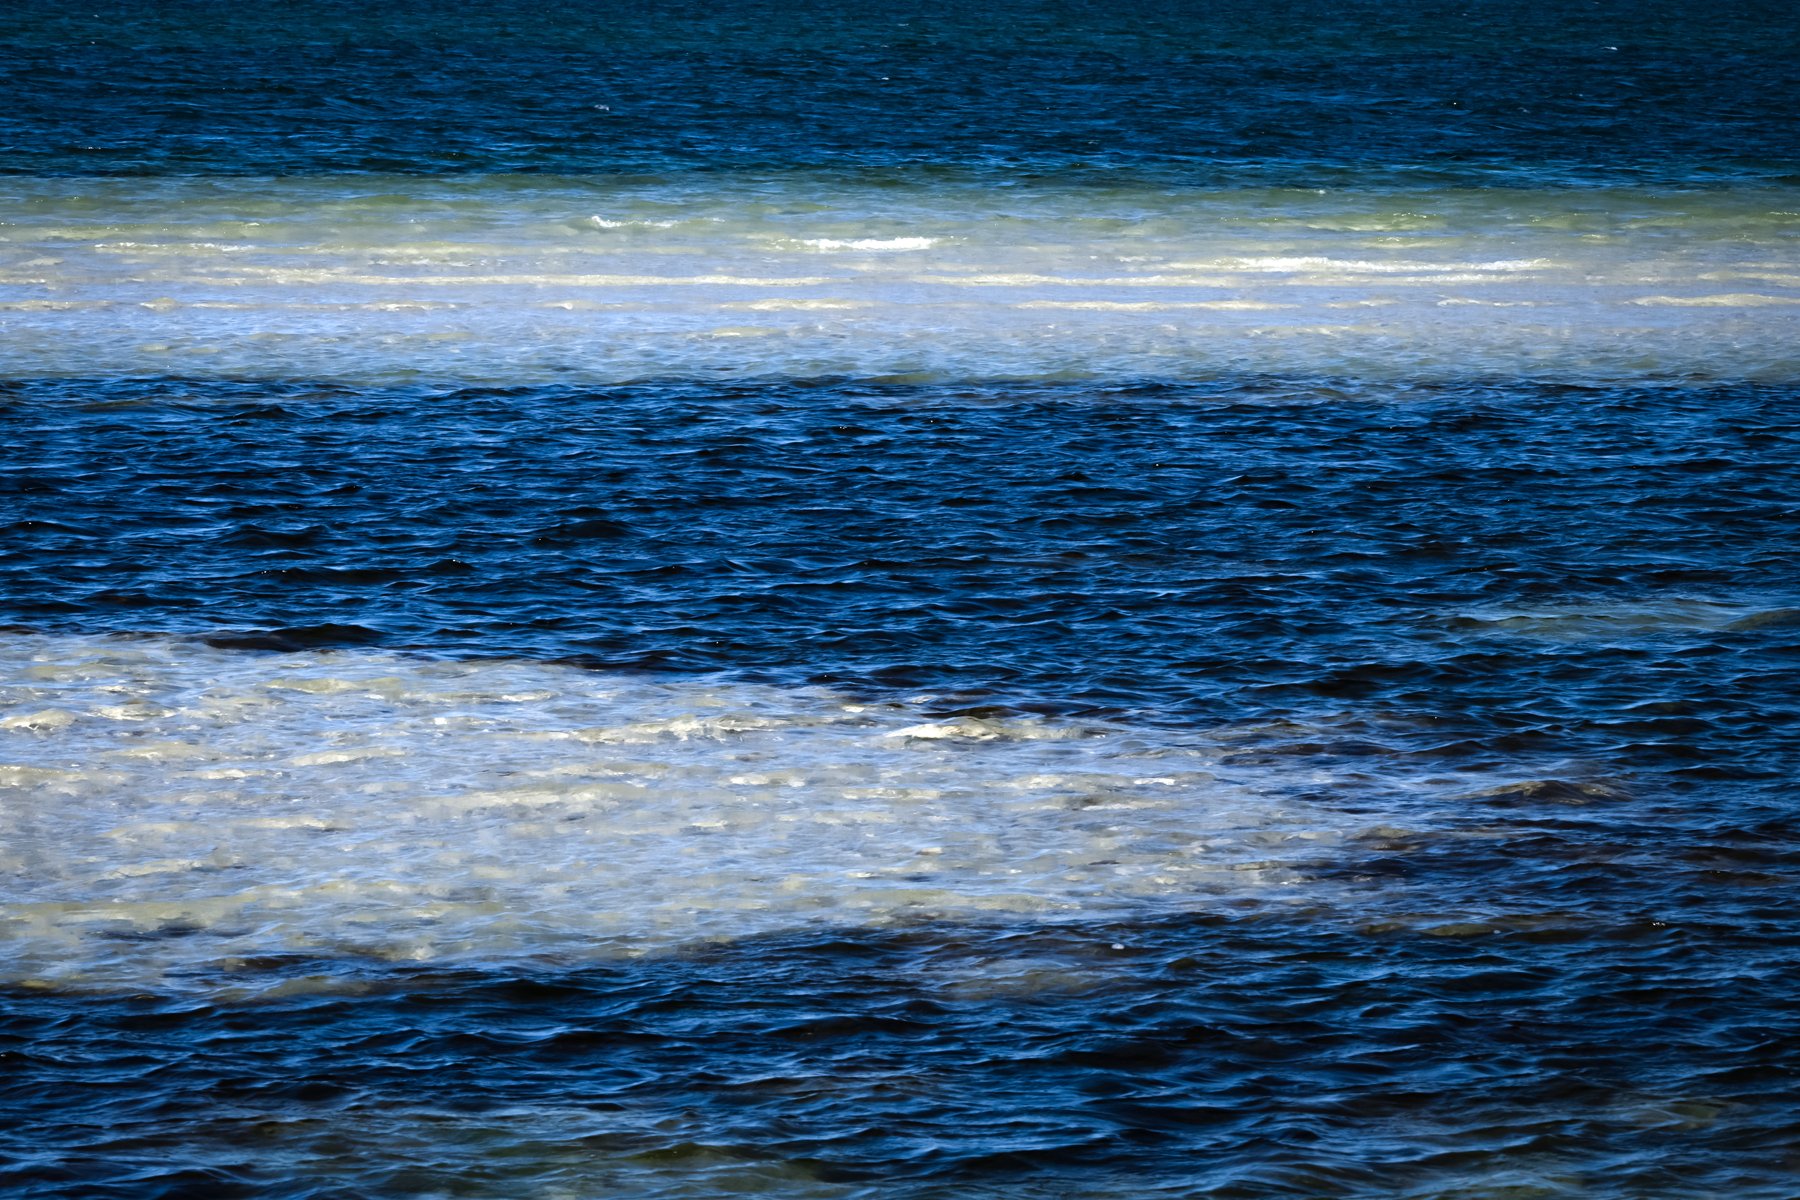 Abstract - Waves over sandbar at low tide